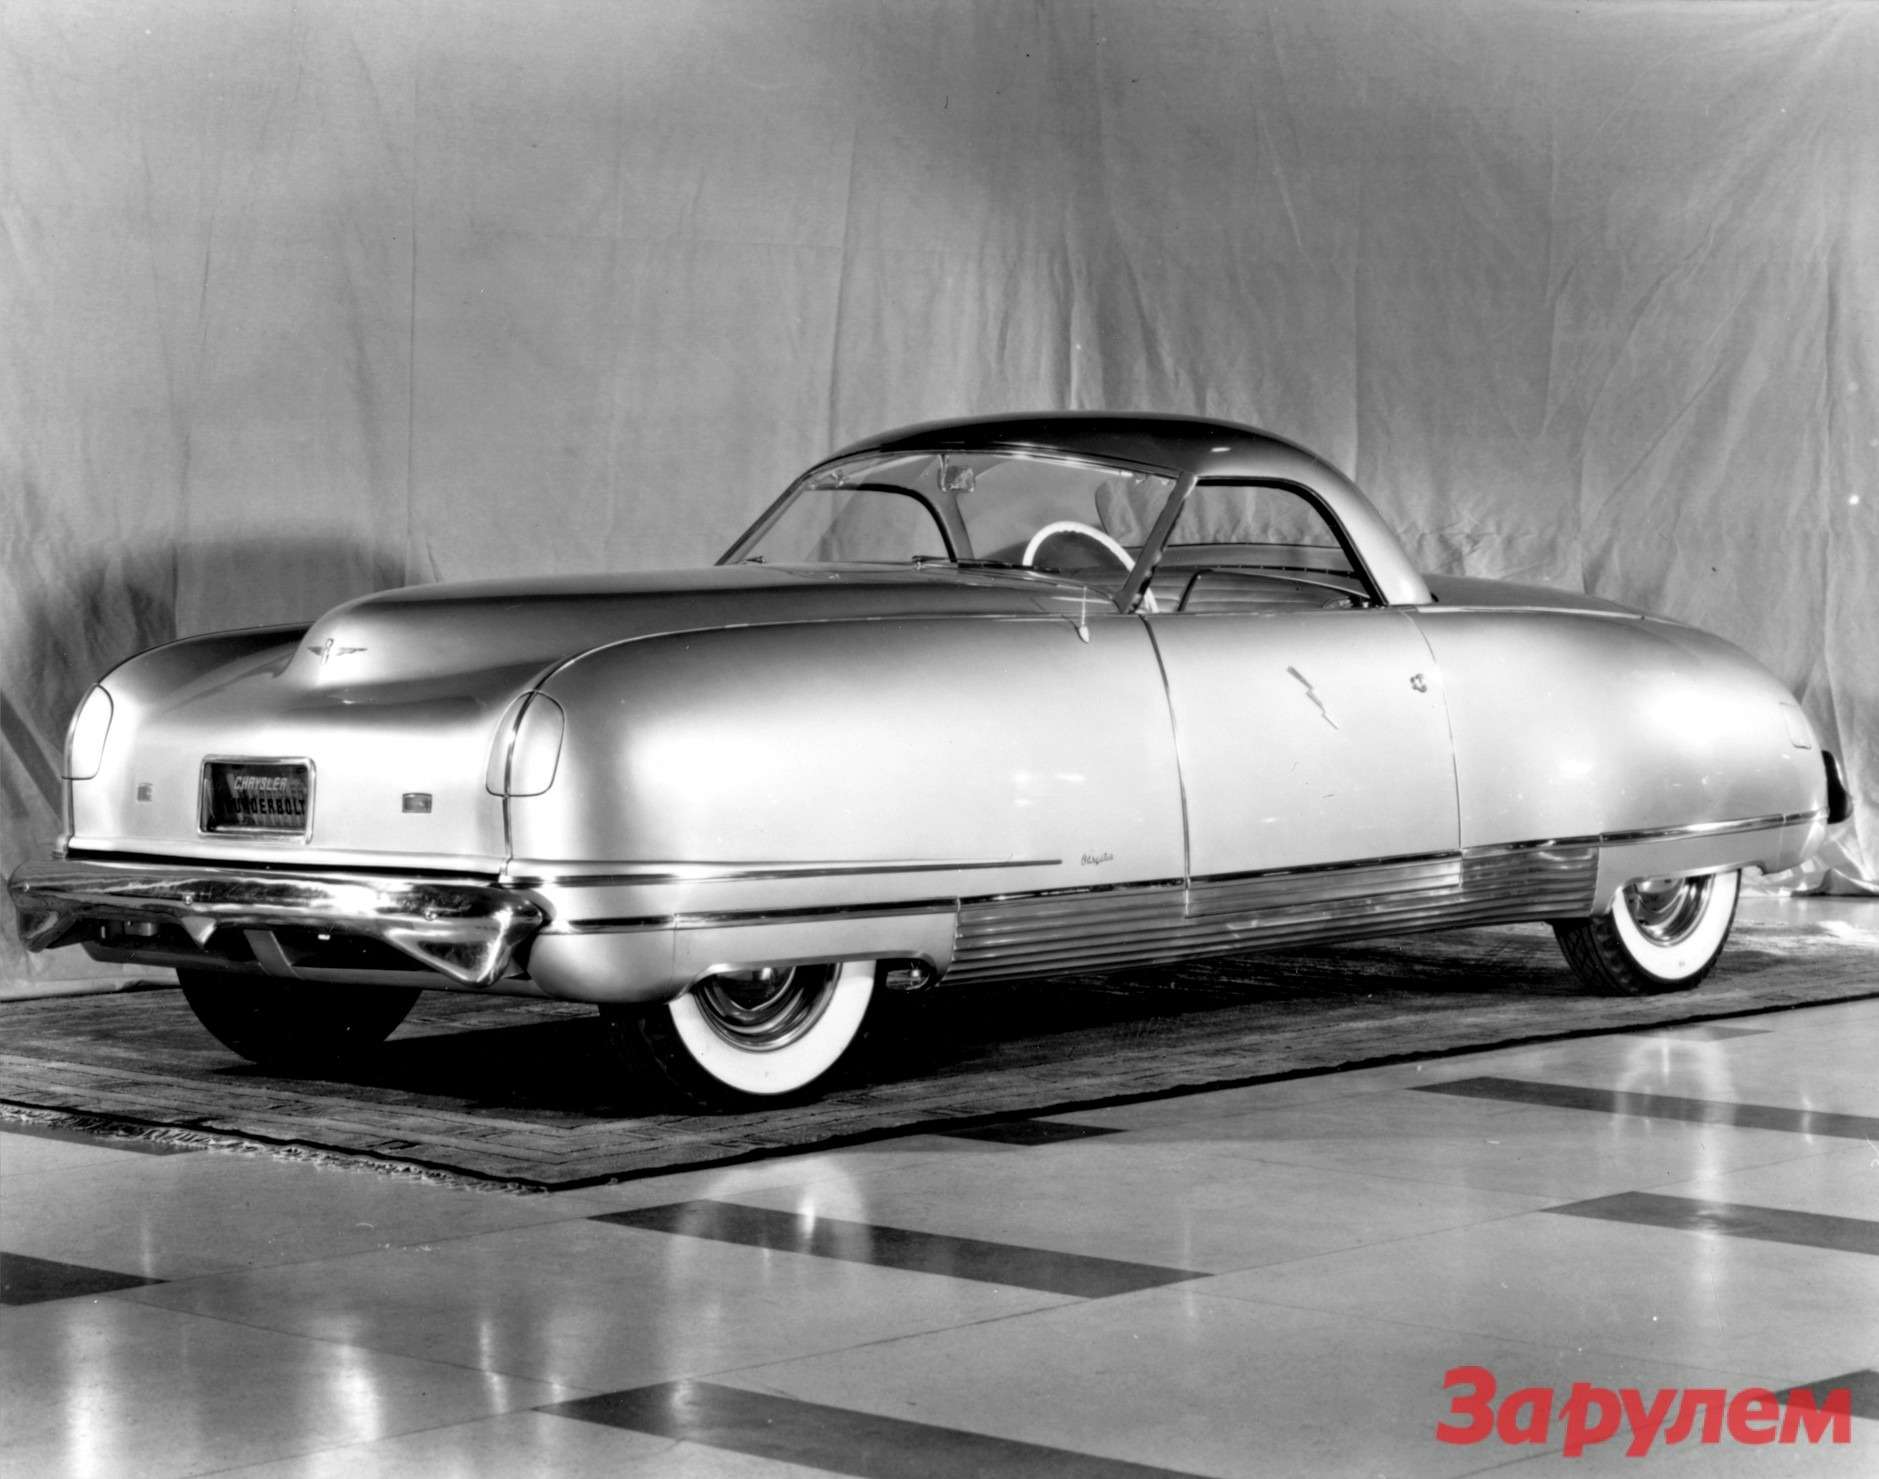 Прототип Thunderbolt базировался на укороченной раме Chrysler Saratoga